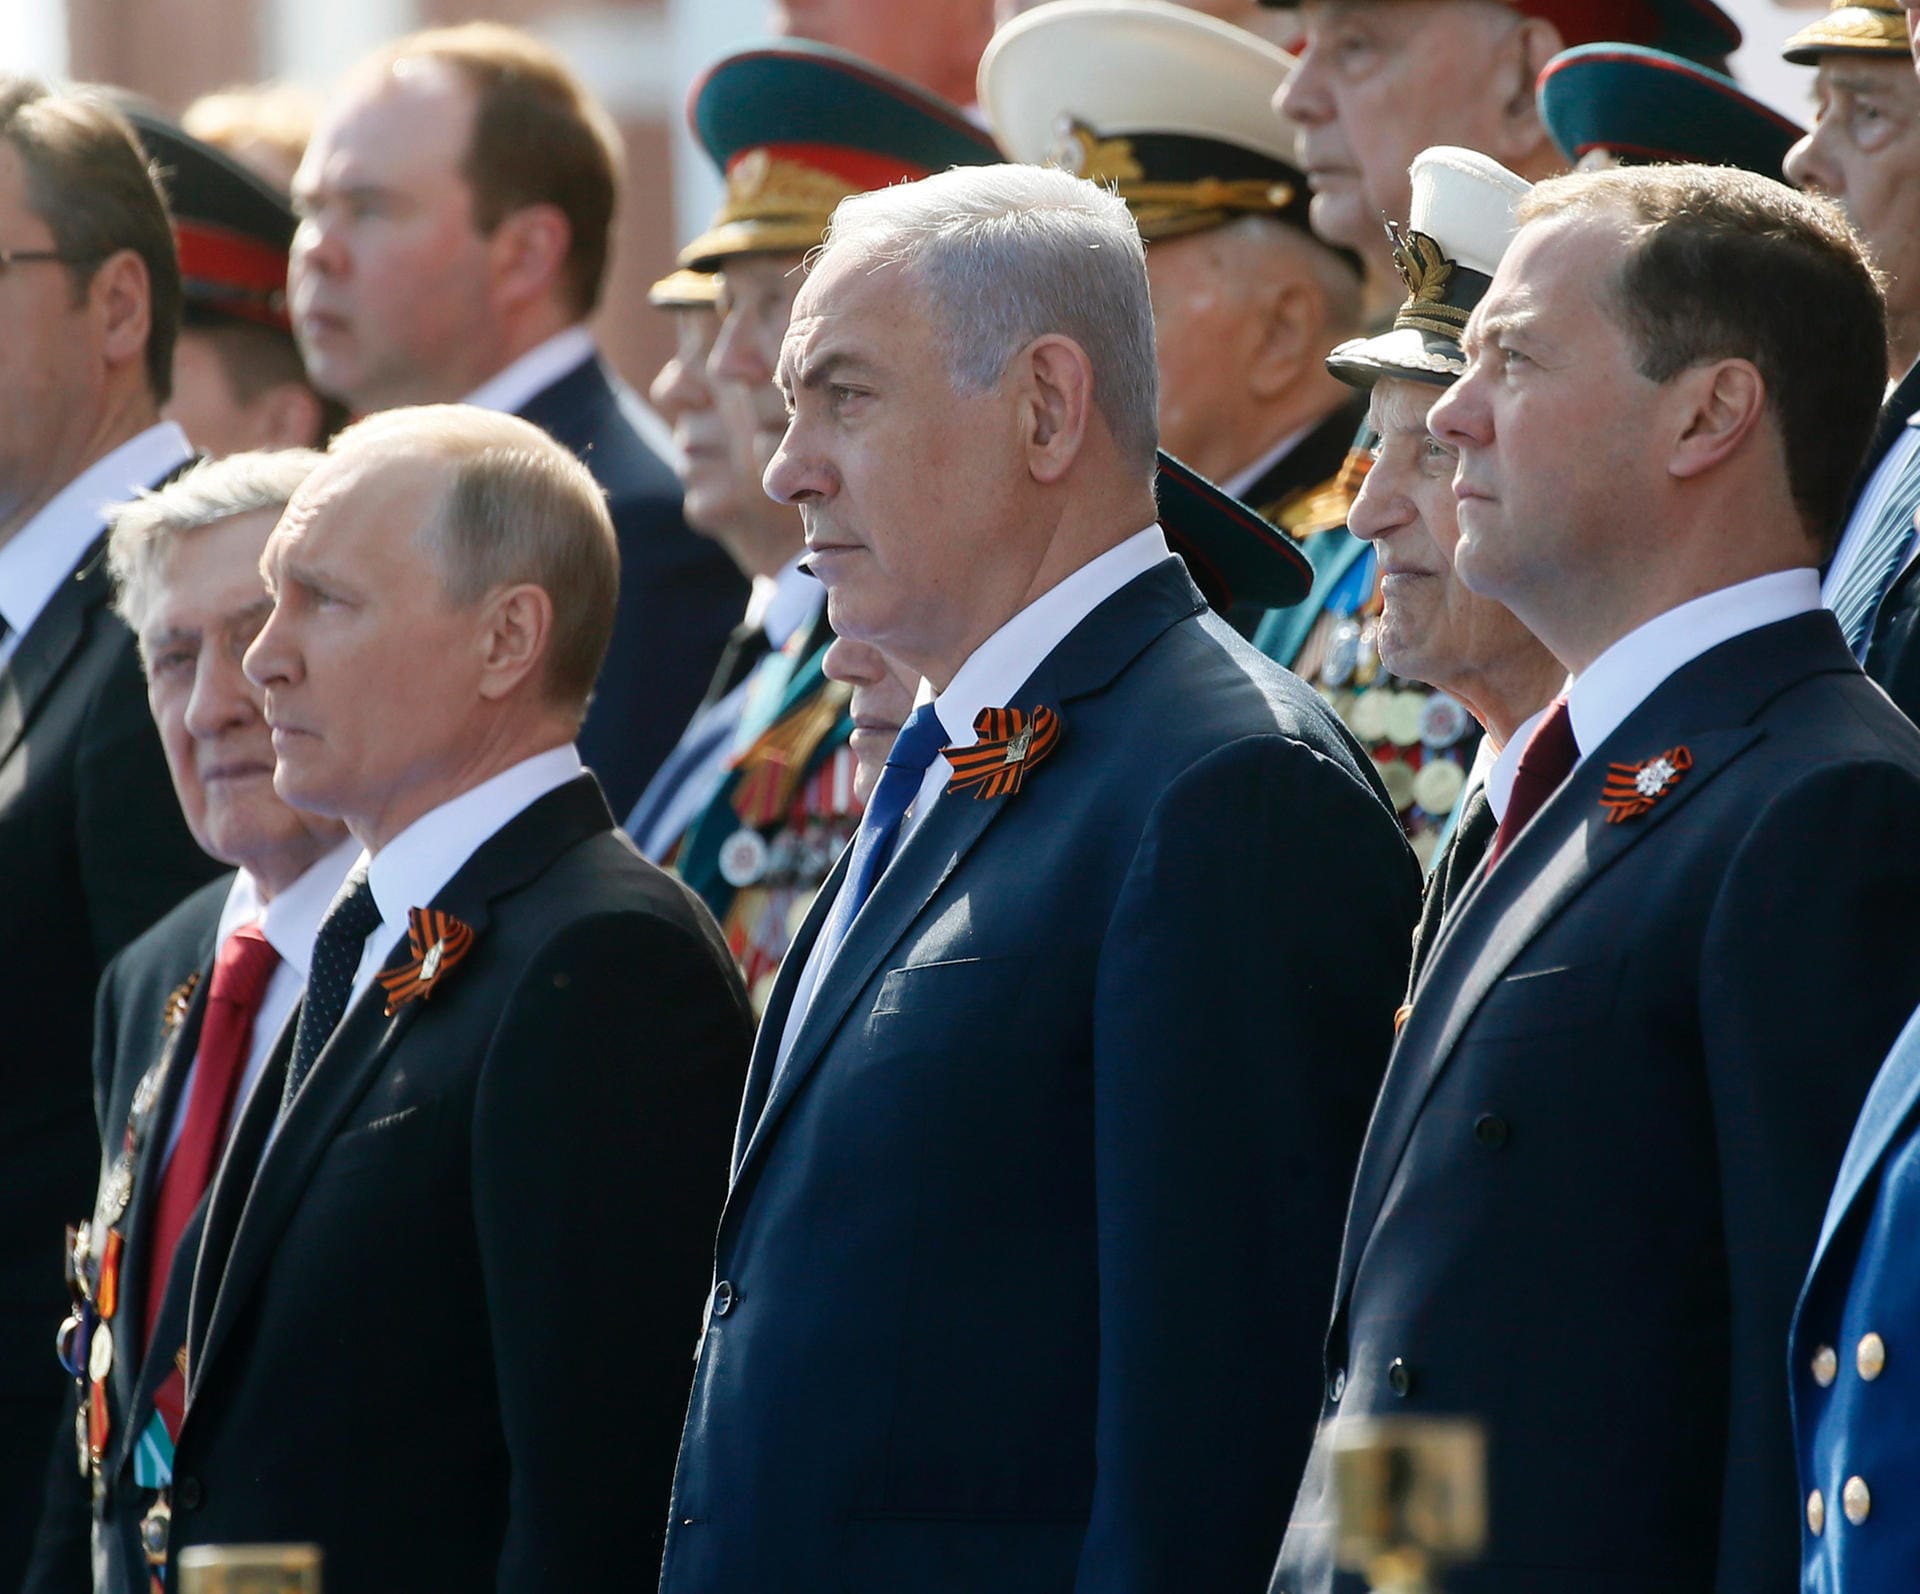 Der frisch zum vierten Mal als russisches Staatsoberhaupt vereidigte Wladimir Putin (l.) nutzt den Tag des Sieges auch zur außenpolitischen Repräsentation. Dieses Jahr ist unter anderem der israelische Ministerpräsident Benjamin Netanjahu (2. v. l.) zu Gast. Daneben steht Russlands Ministerpräsident Dmitri Medwedew.